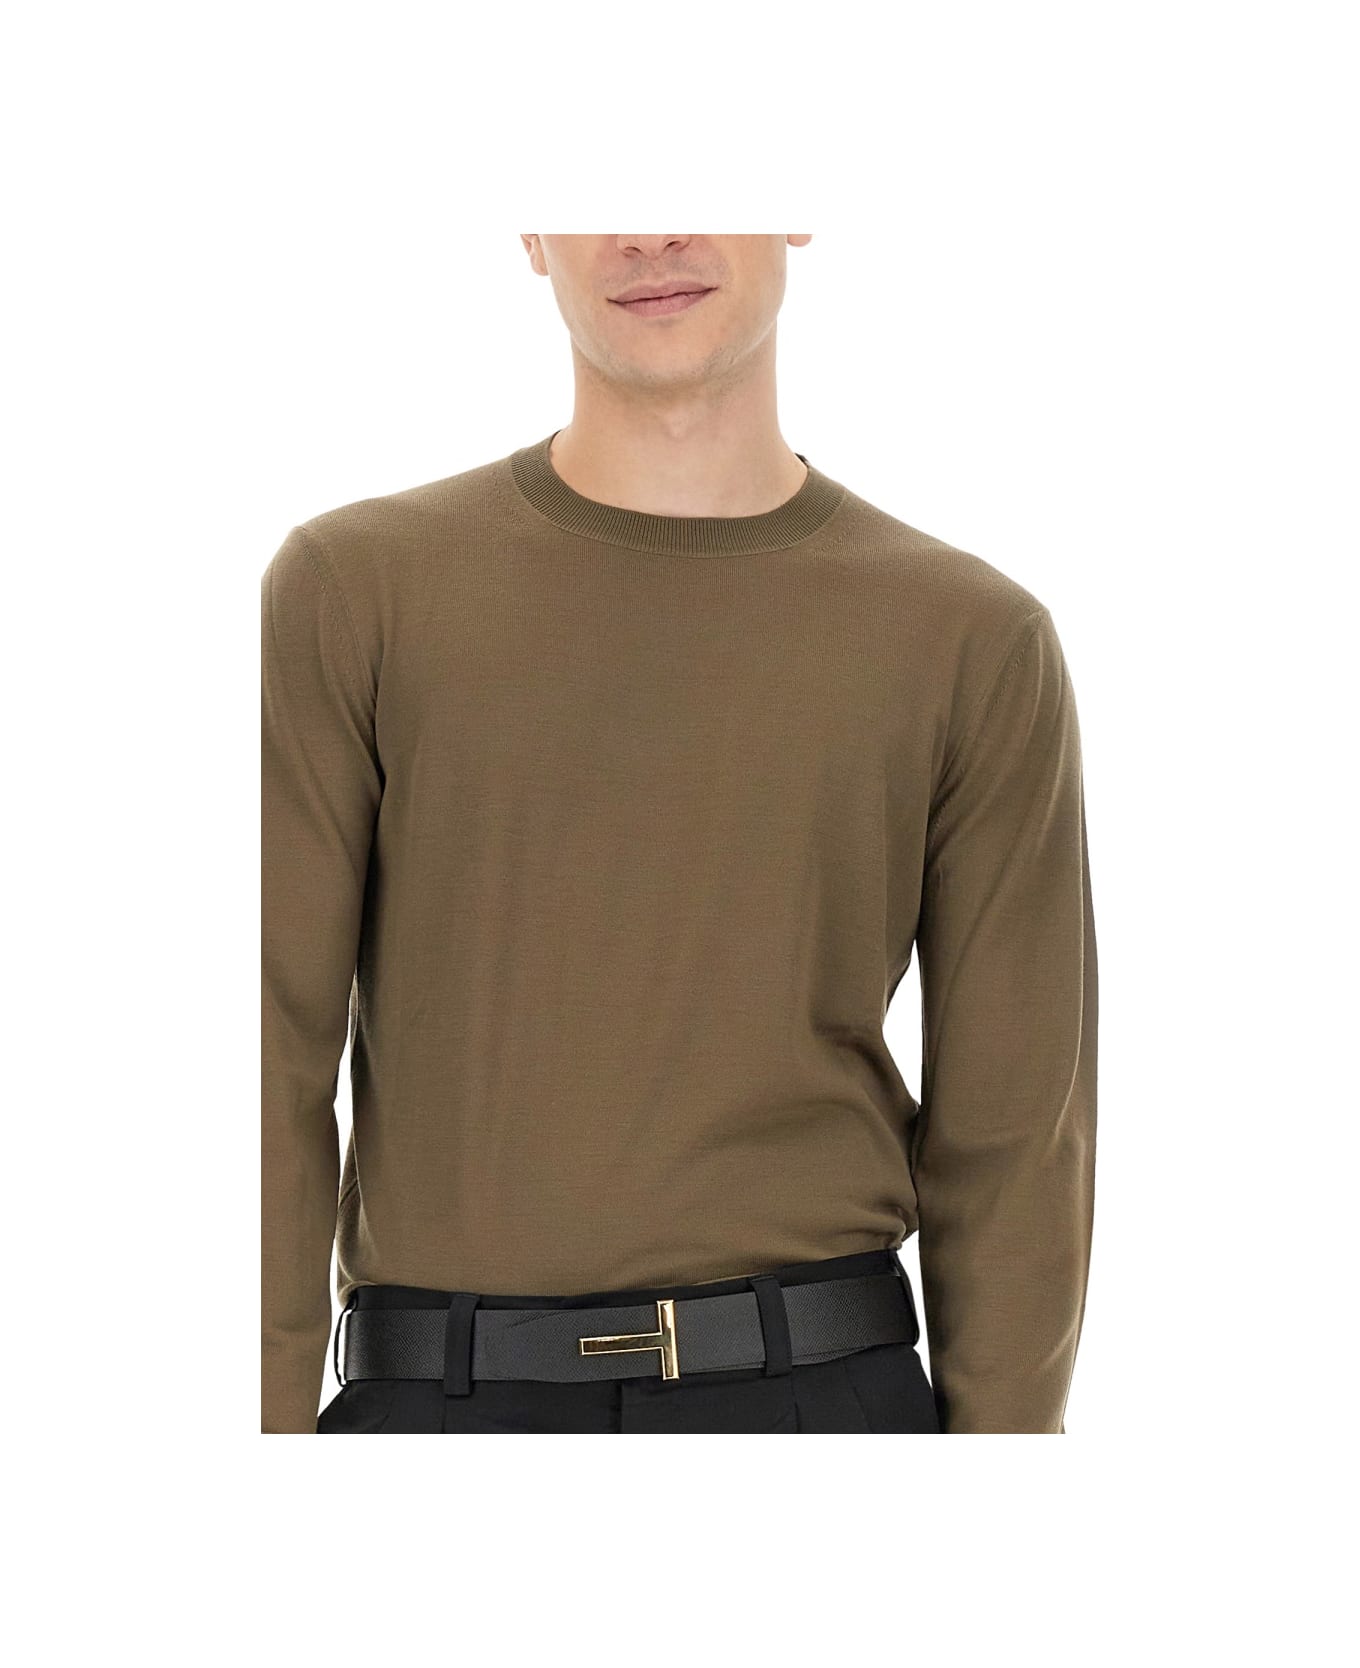 Tom Ford Slim Fit Shirt - ARMY GREEN フリース